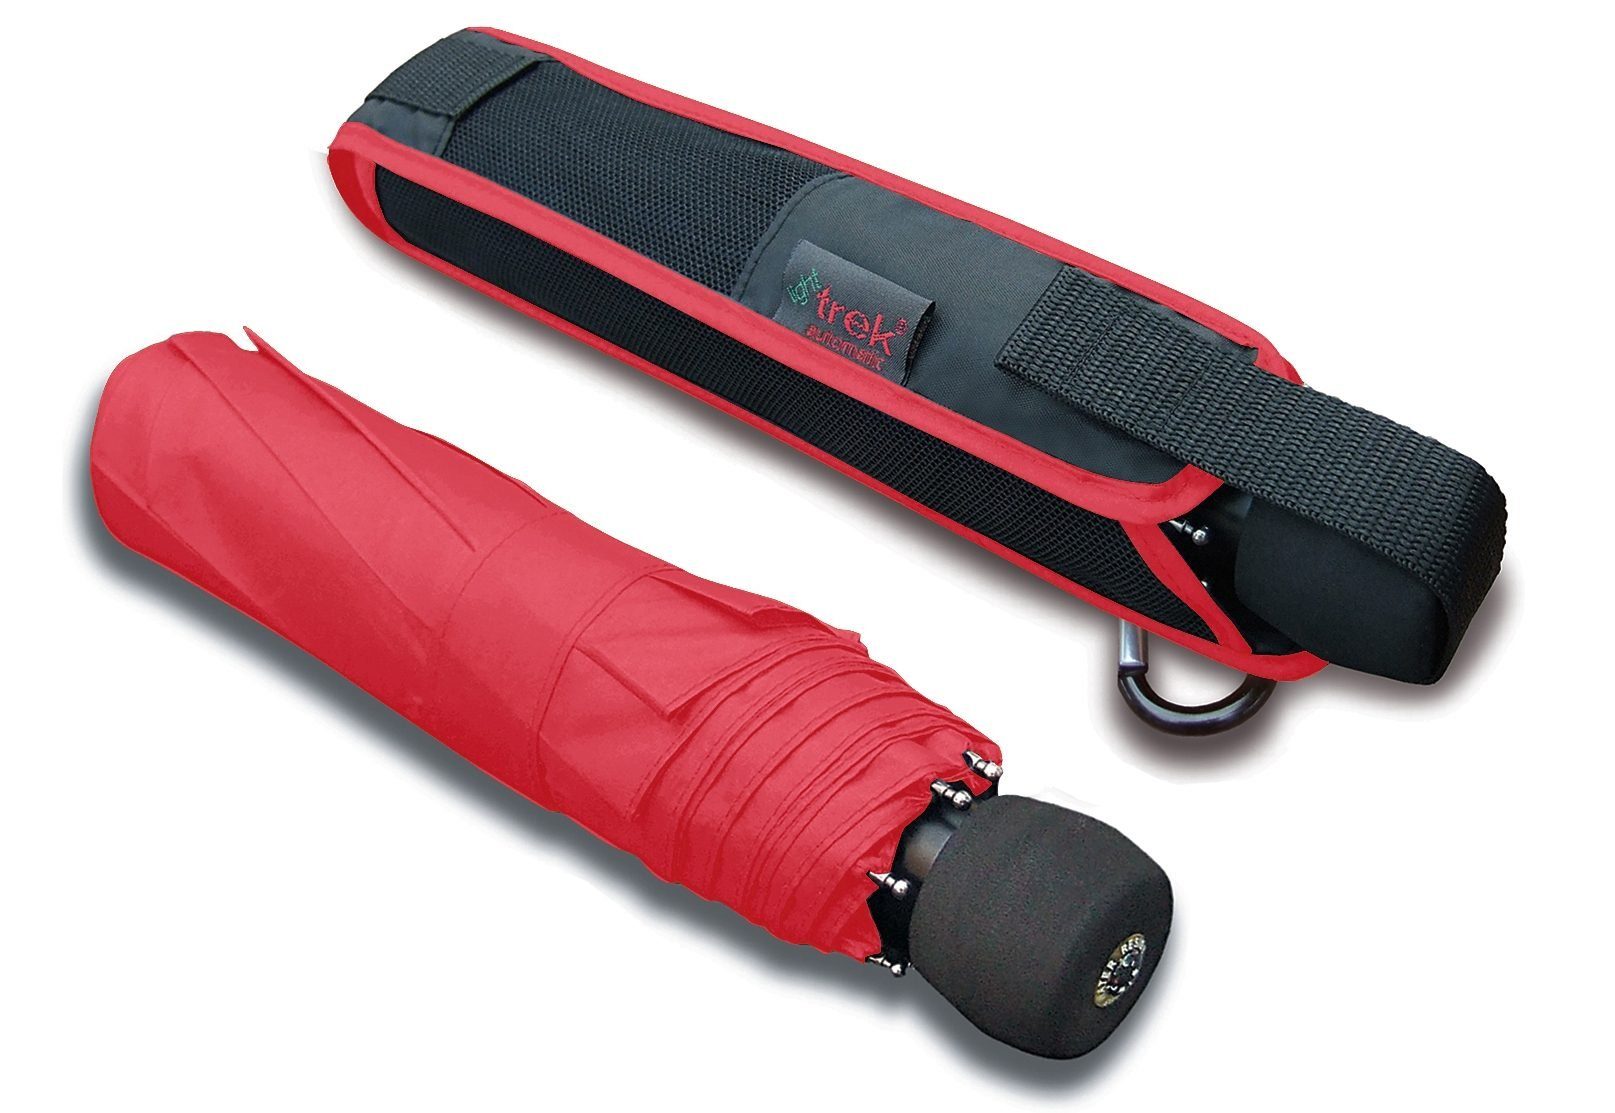 mit Taschenregenschirm Automatik, integriertem trek, rot light Kompass EuroSCHIRM®